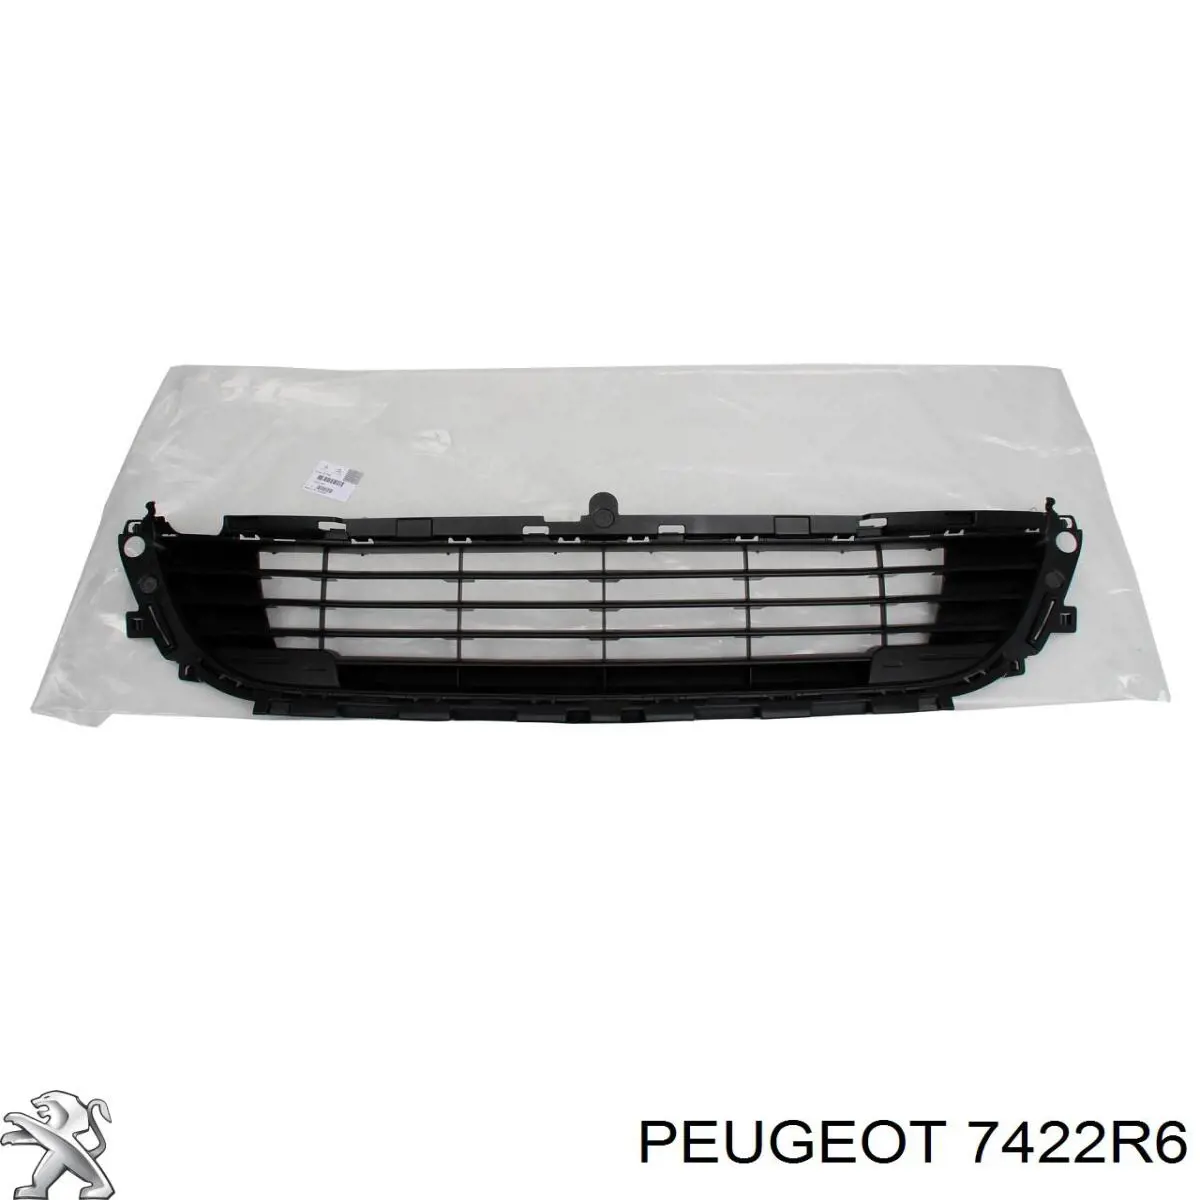 7422R6 Peugeot/Citroen rejilla de ventilación, parachoques trasero, central